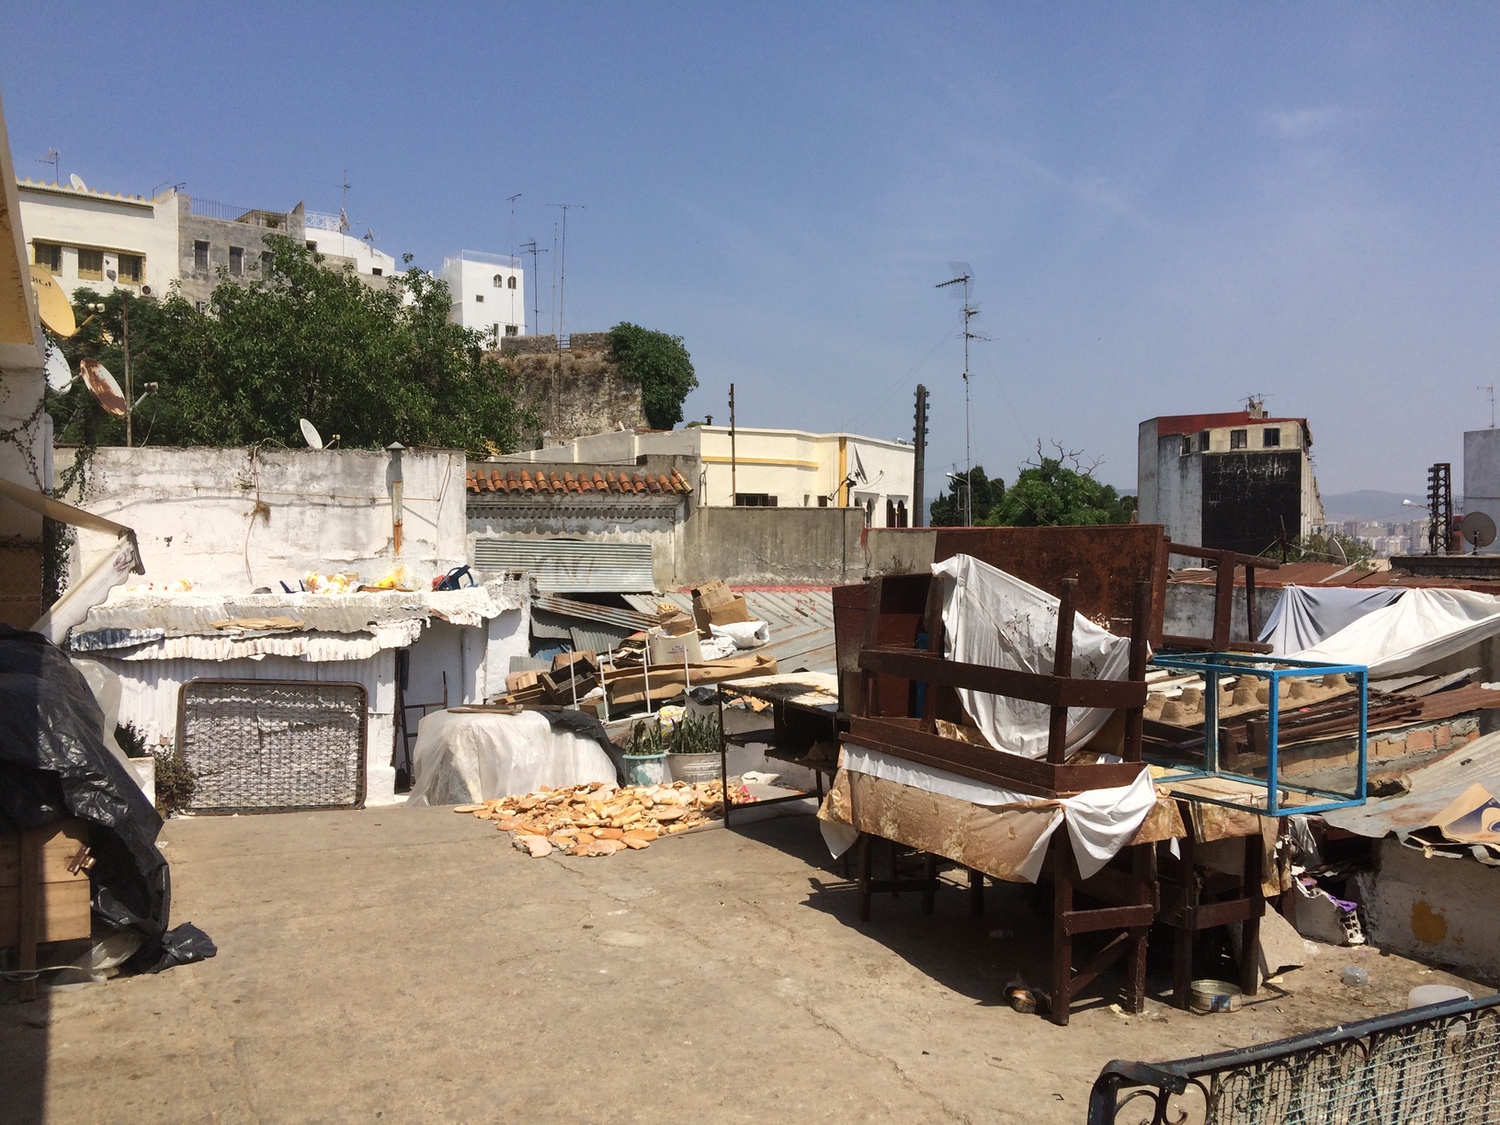 View toward the medina walls past gathered furnishing